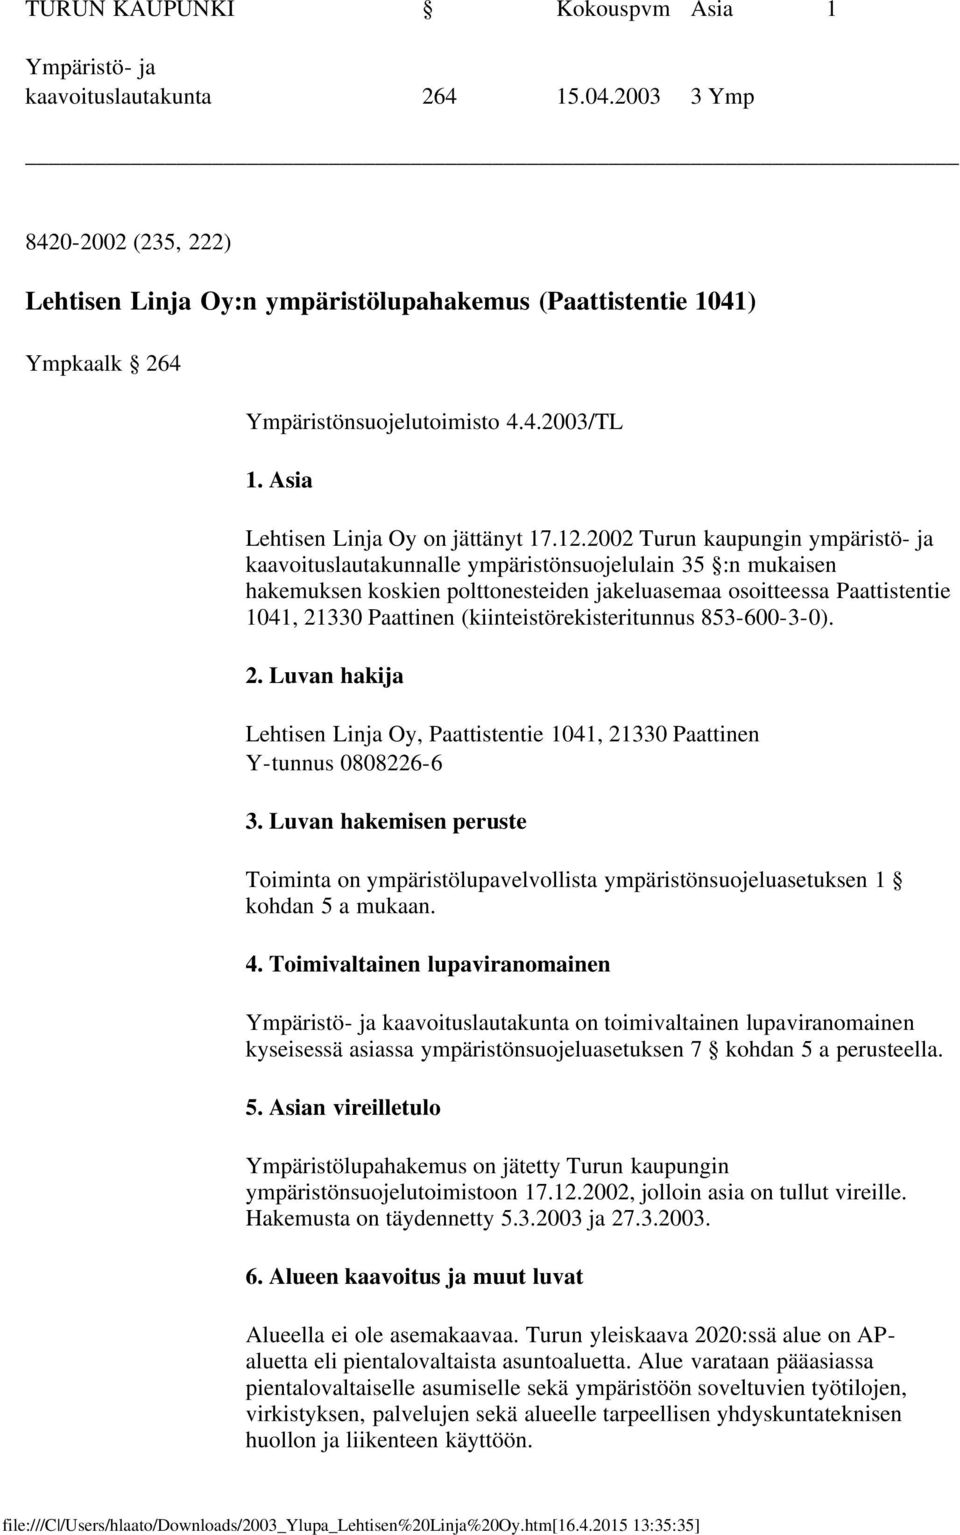 2002 Turun kaupungin ympäristö- ja kaavoituslautakunnalle ympäristönsuojelulain 35 :n mukaisen hakemuksen koskien polttonesteiden jakeluasemaa osoitteessa Paattistentie 1041, 21330 Paattinen